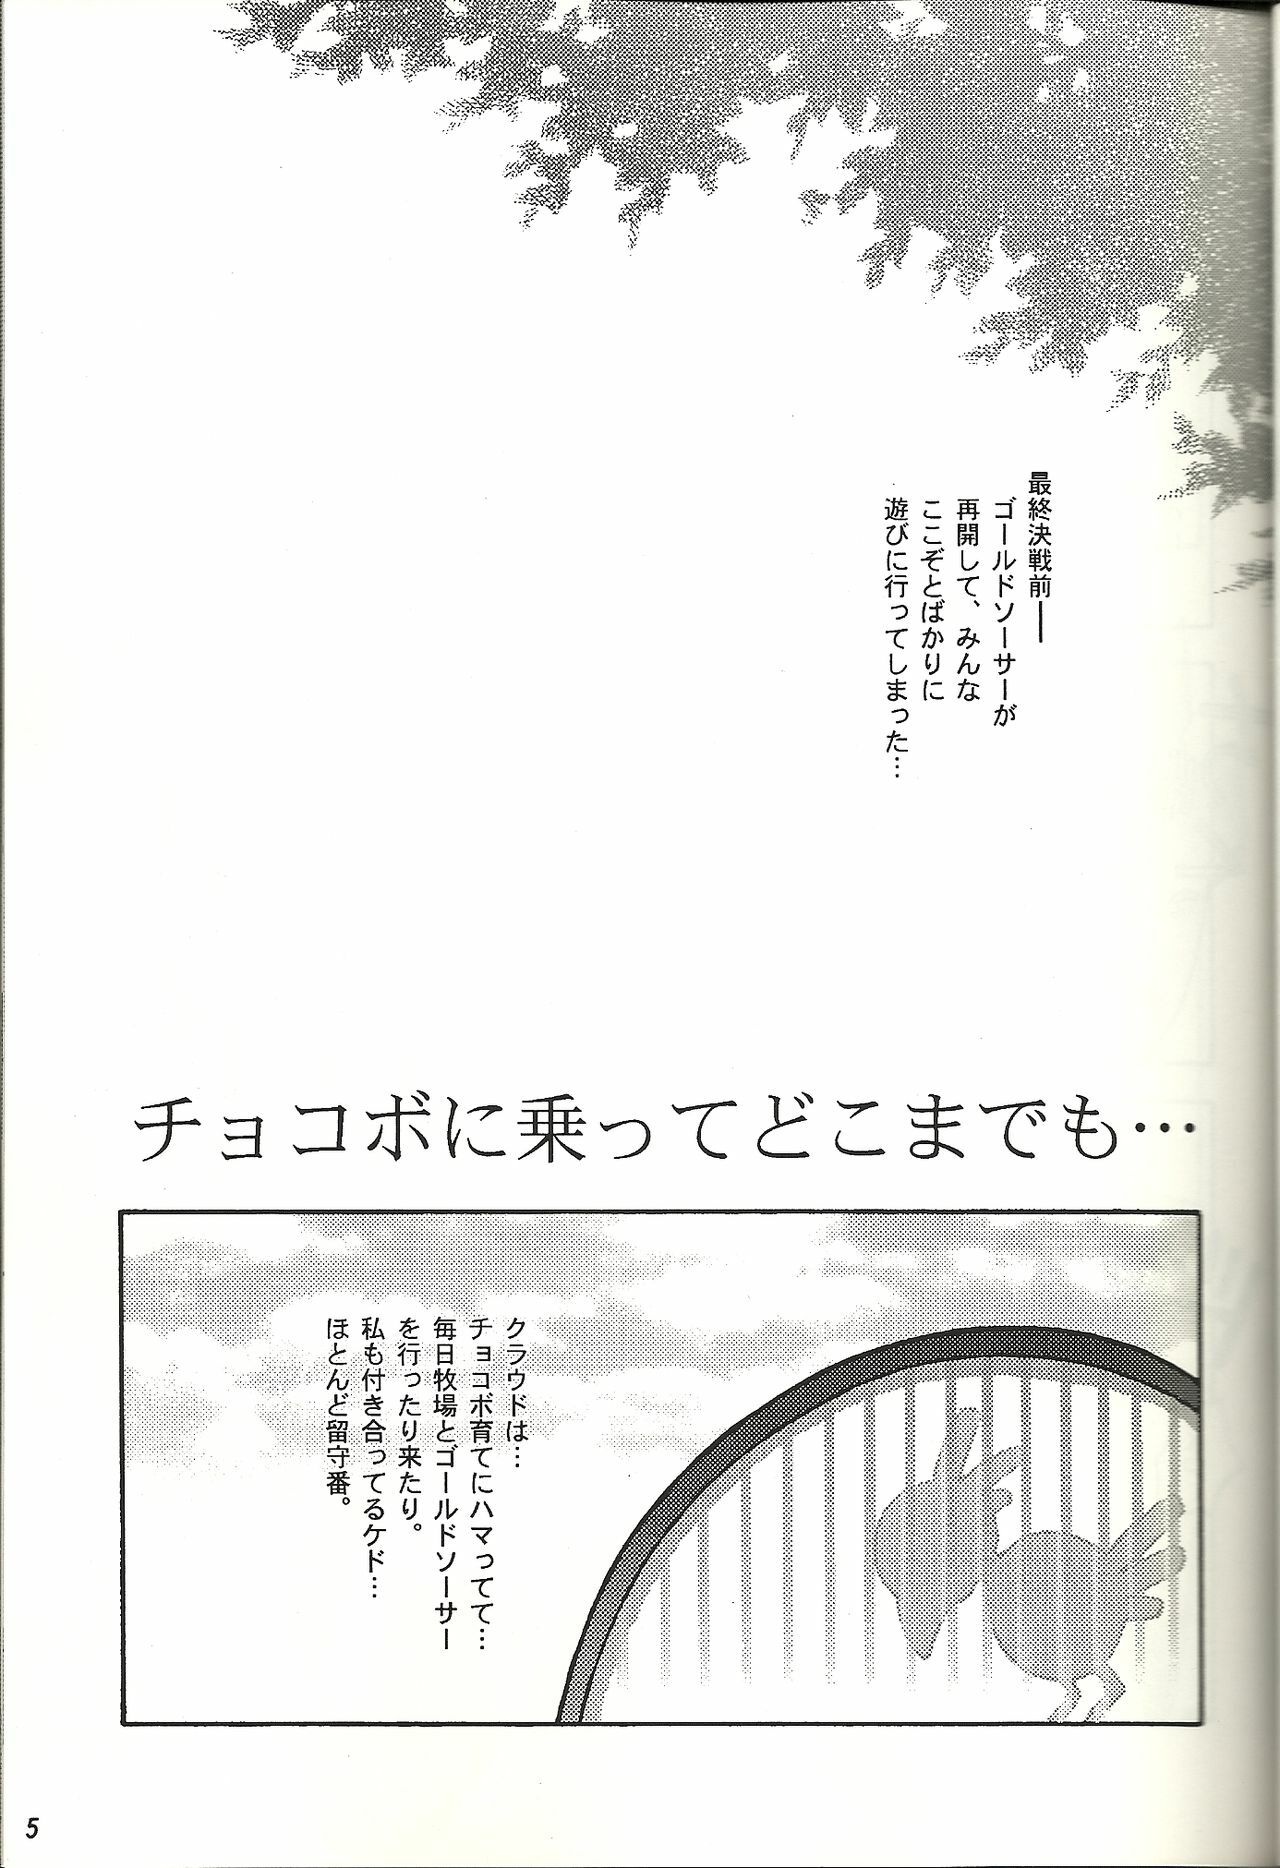 (CR21) [Bakuhatsu BRS. (B.Tarou)] Renai Shiyou (Final Fantasy VII) page 4 full